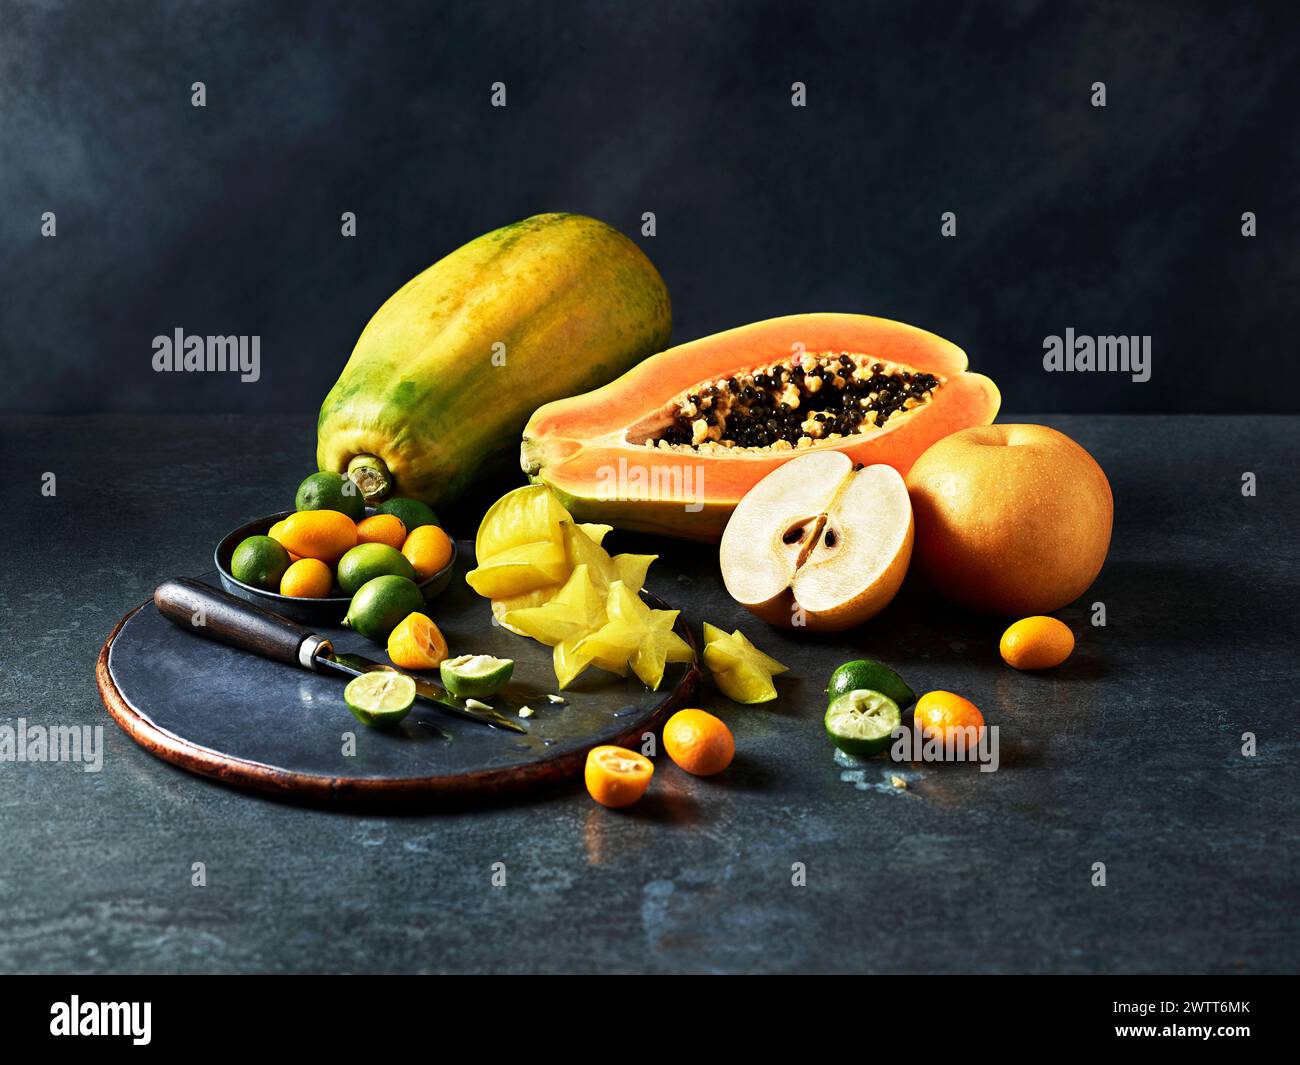 Eine lebendige Ausstellung exotischer Früchte, kunstvoll auf einer dunklen strukturierten Oberfläche angeordnet. Stockfoto